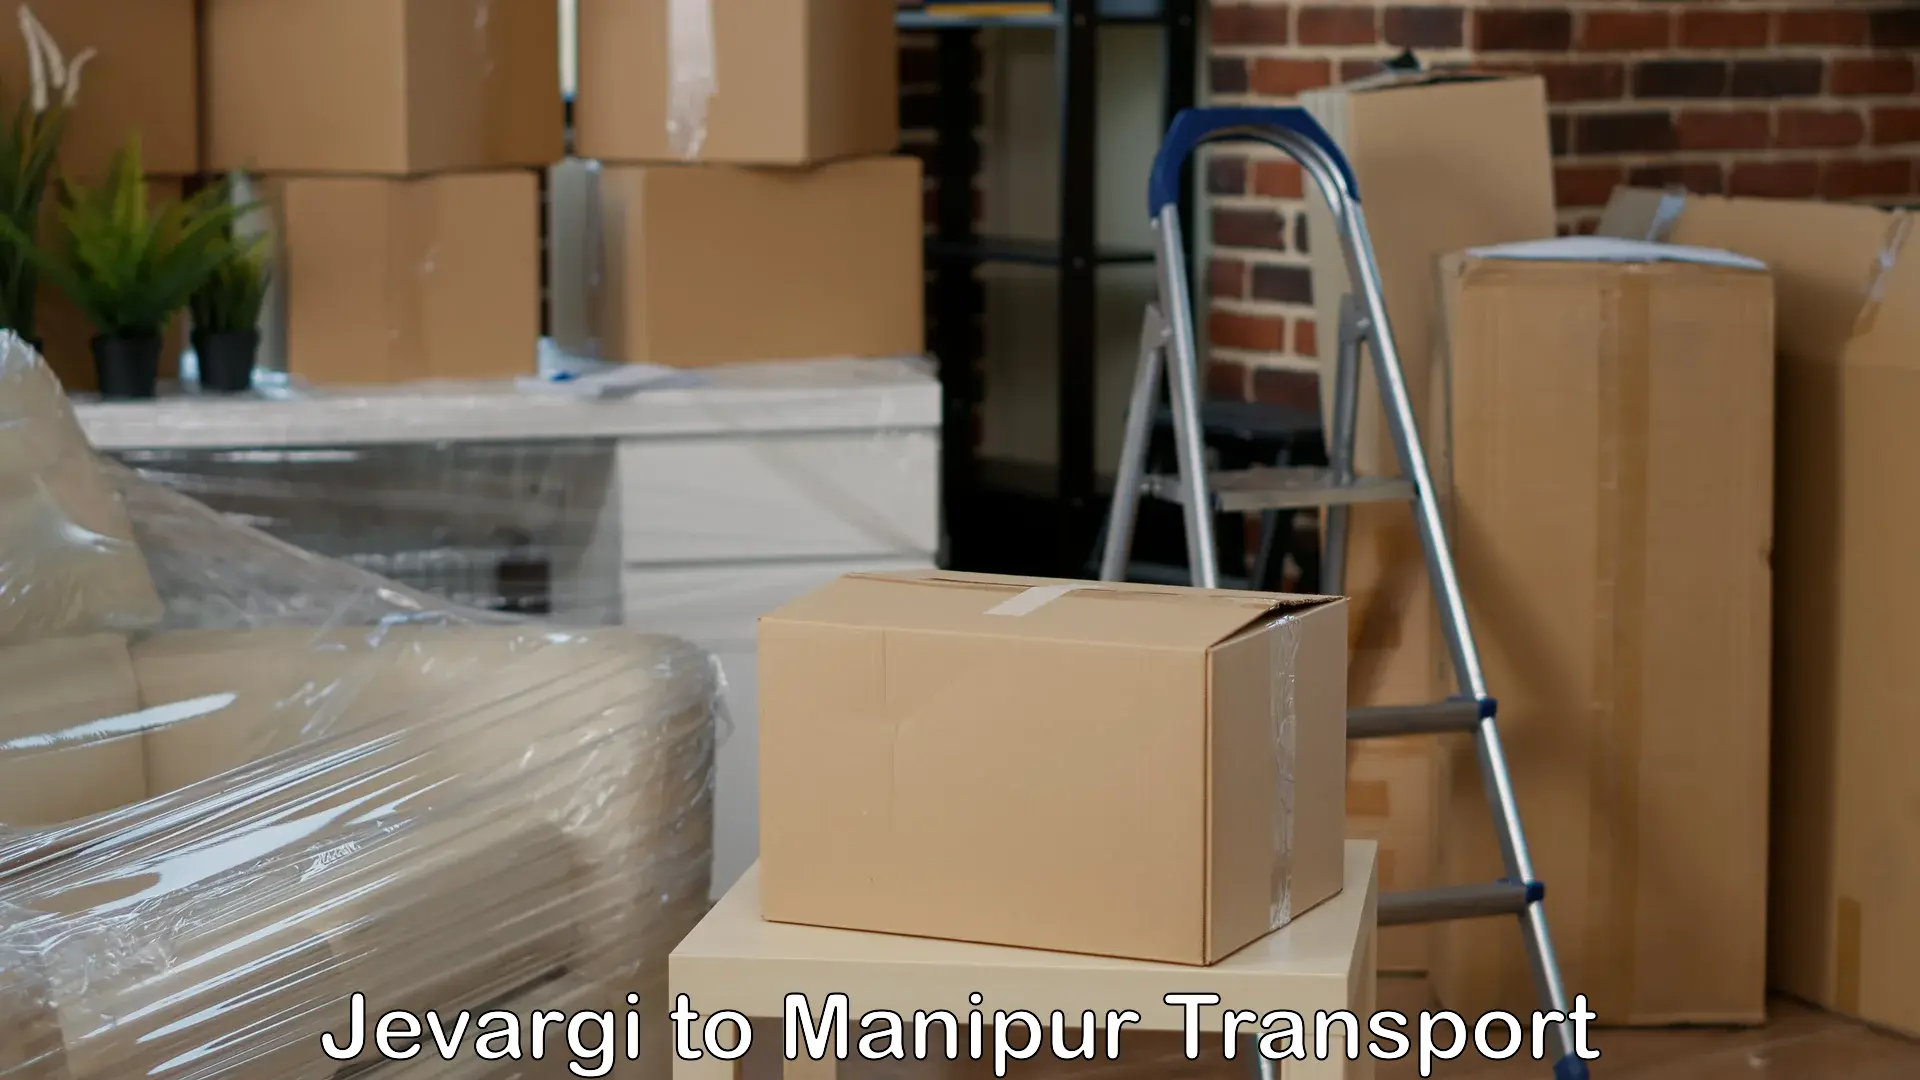 Container transport service Jevargi to Manipur